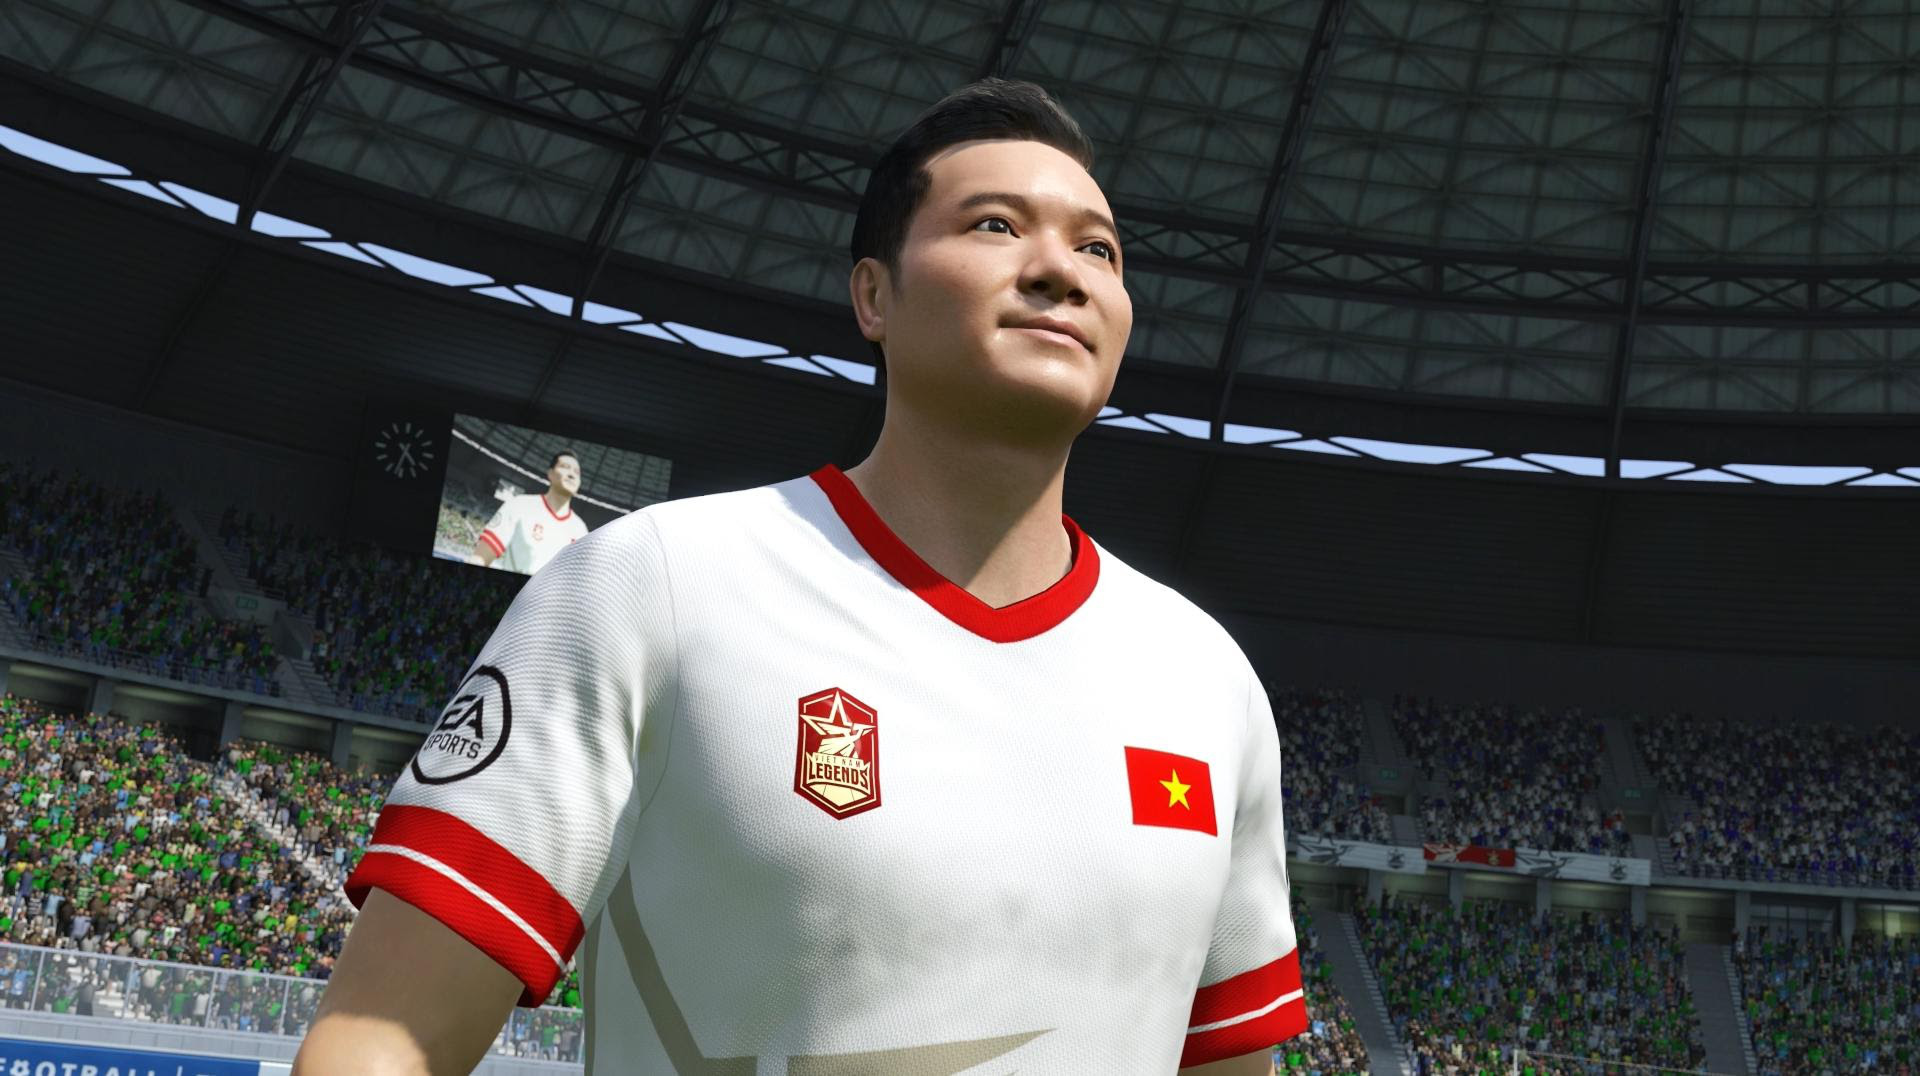 Nguyễn Hồng Sơn - huyền thoại được yêu mến bậc nhất bóng đá Việt Nam được tái hiện trong FIFA Online 4 như thế nào? - Ảnh 1.